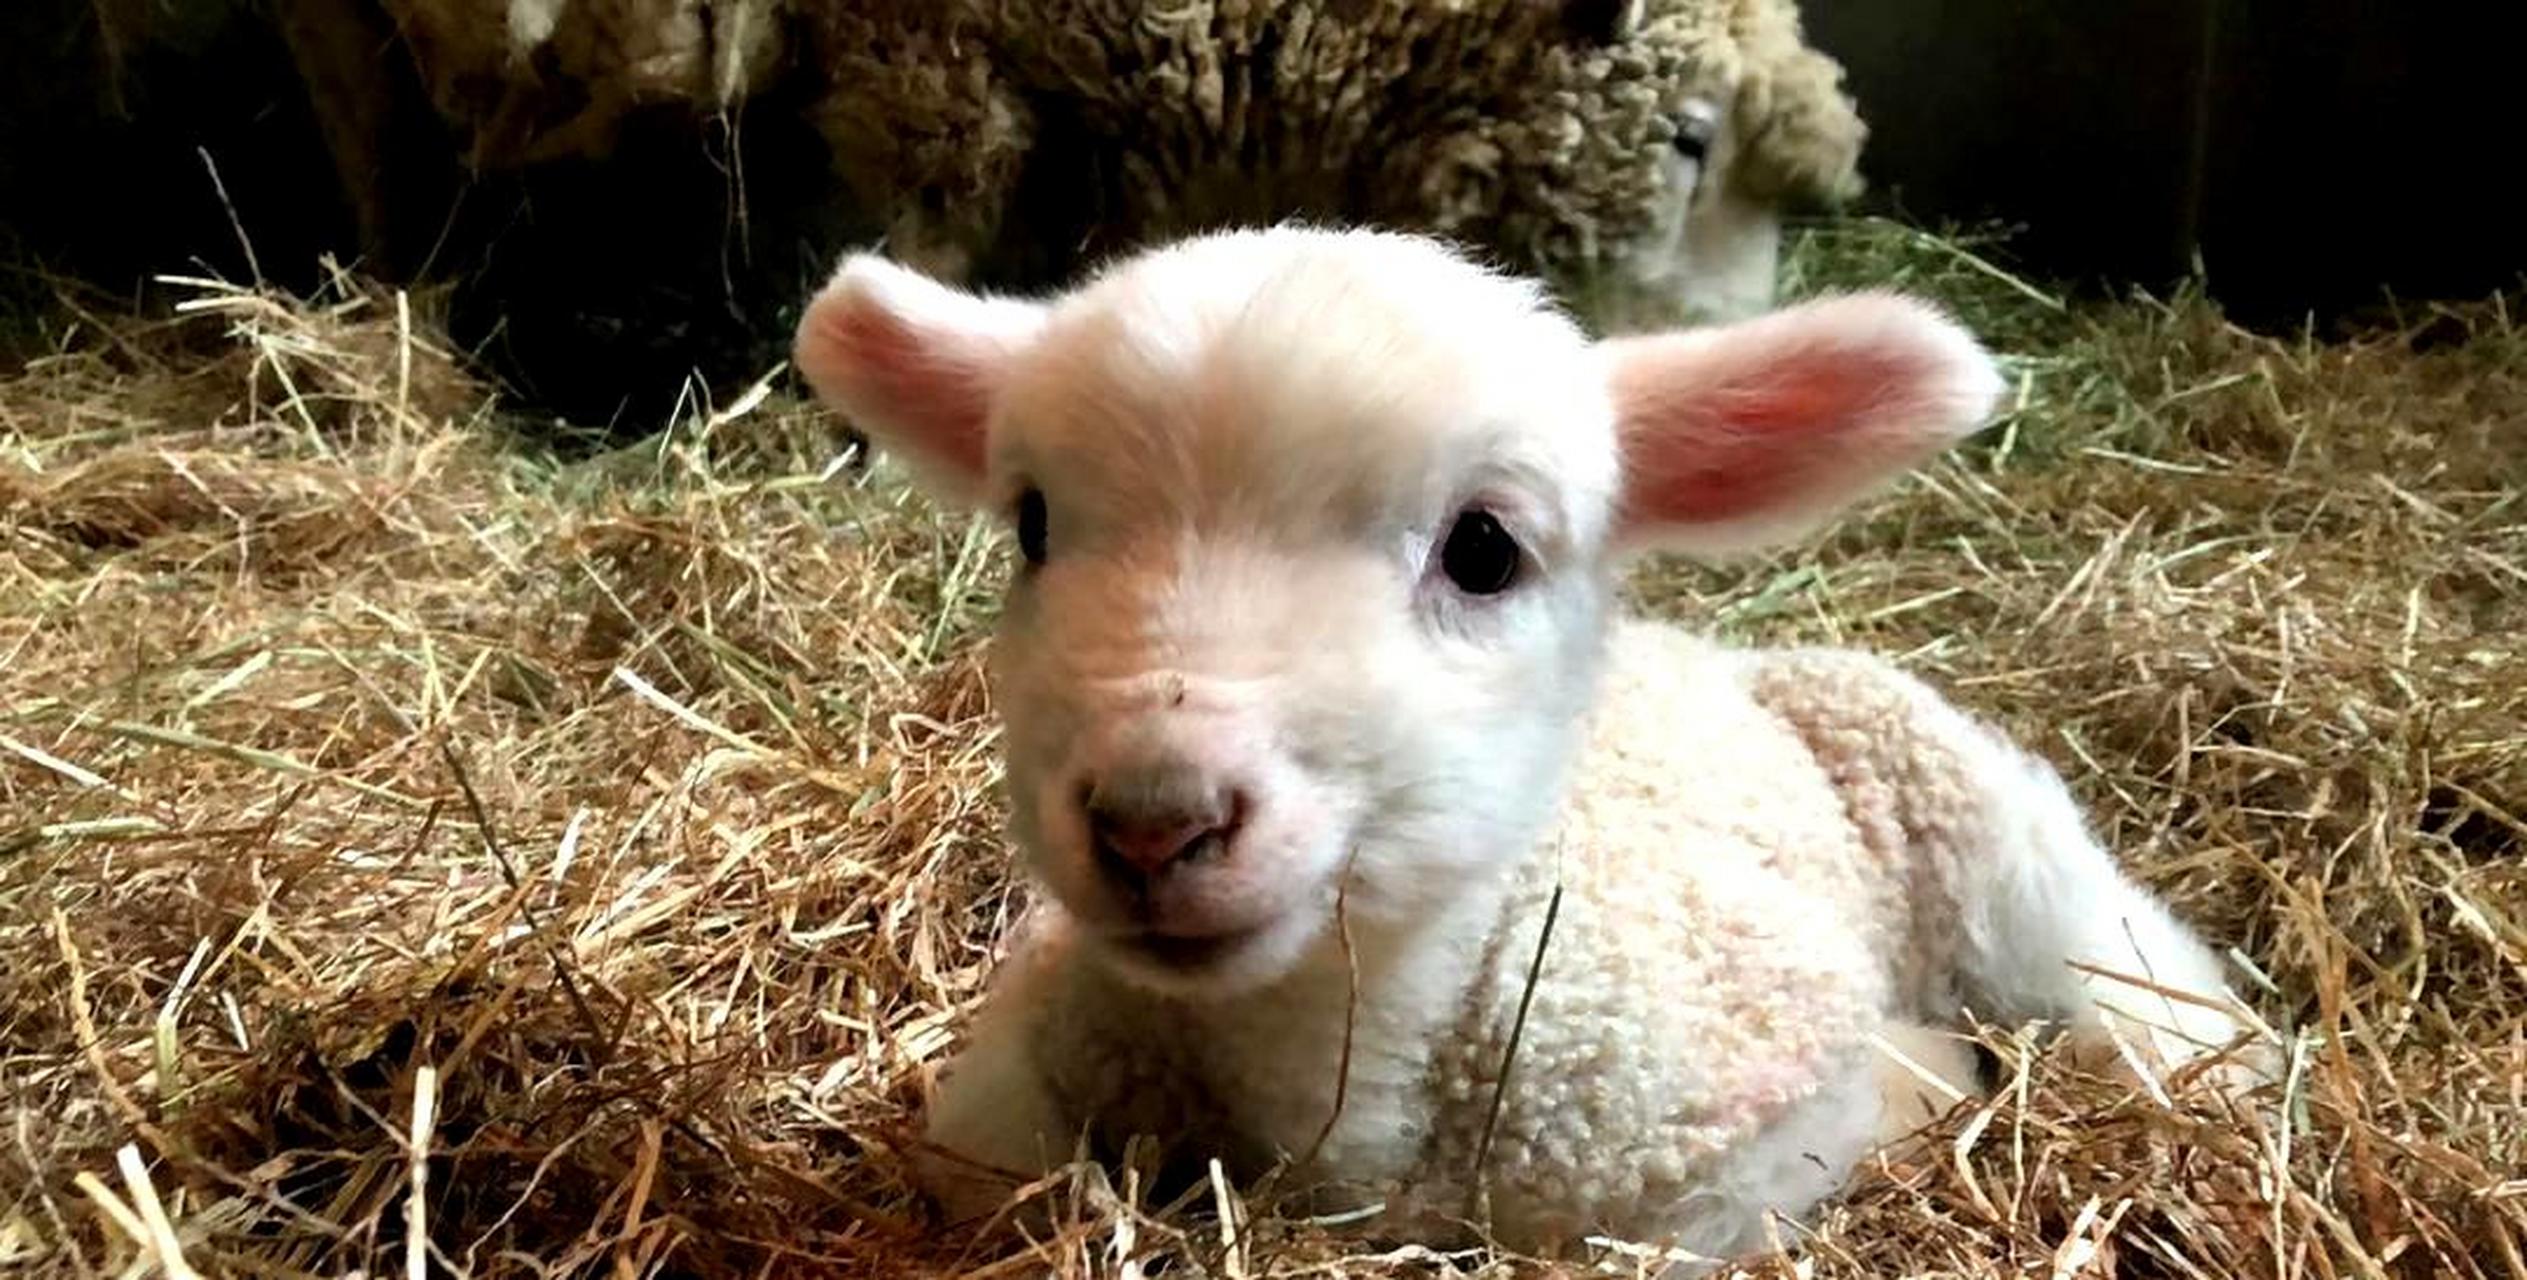 这只刚出生的小羊,像个毛绒玩具一样,太可爱了